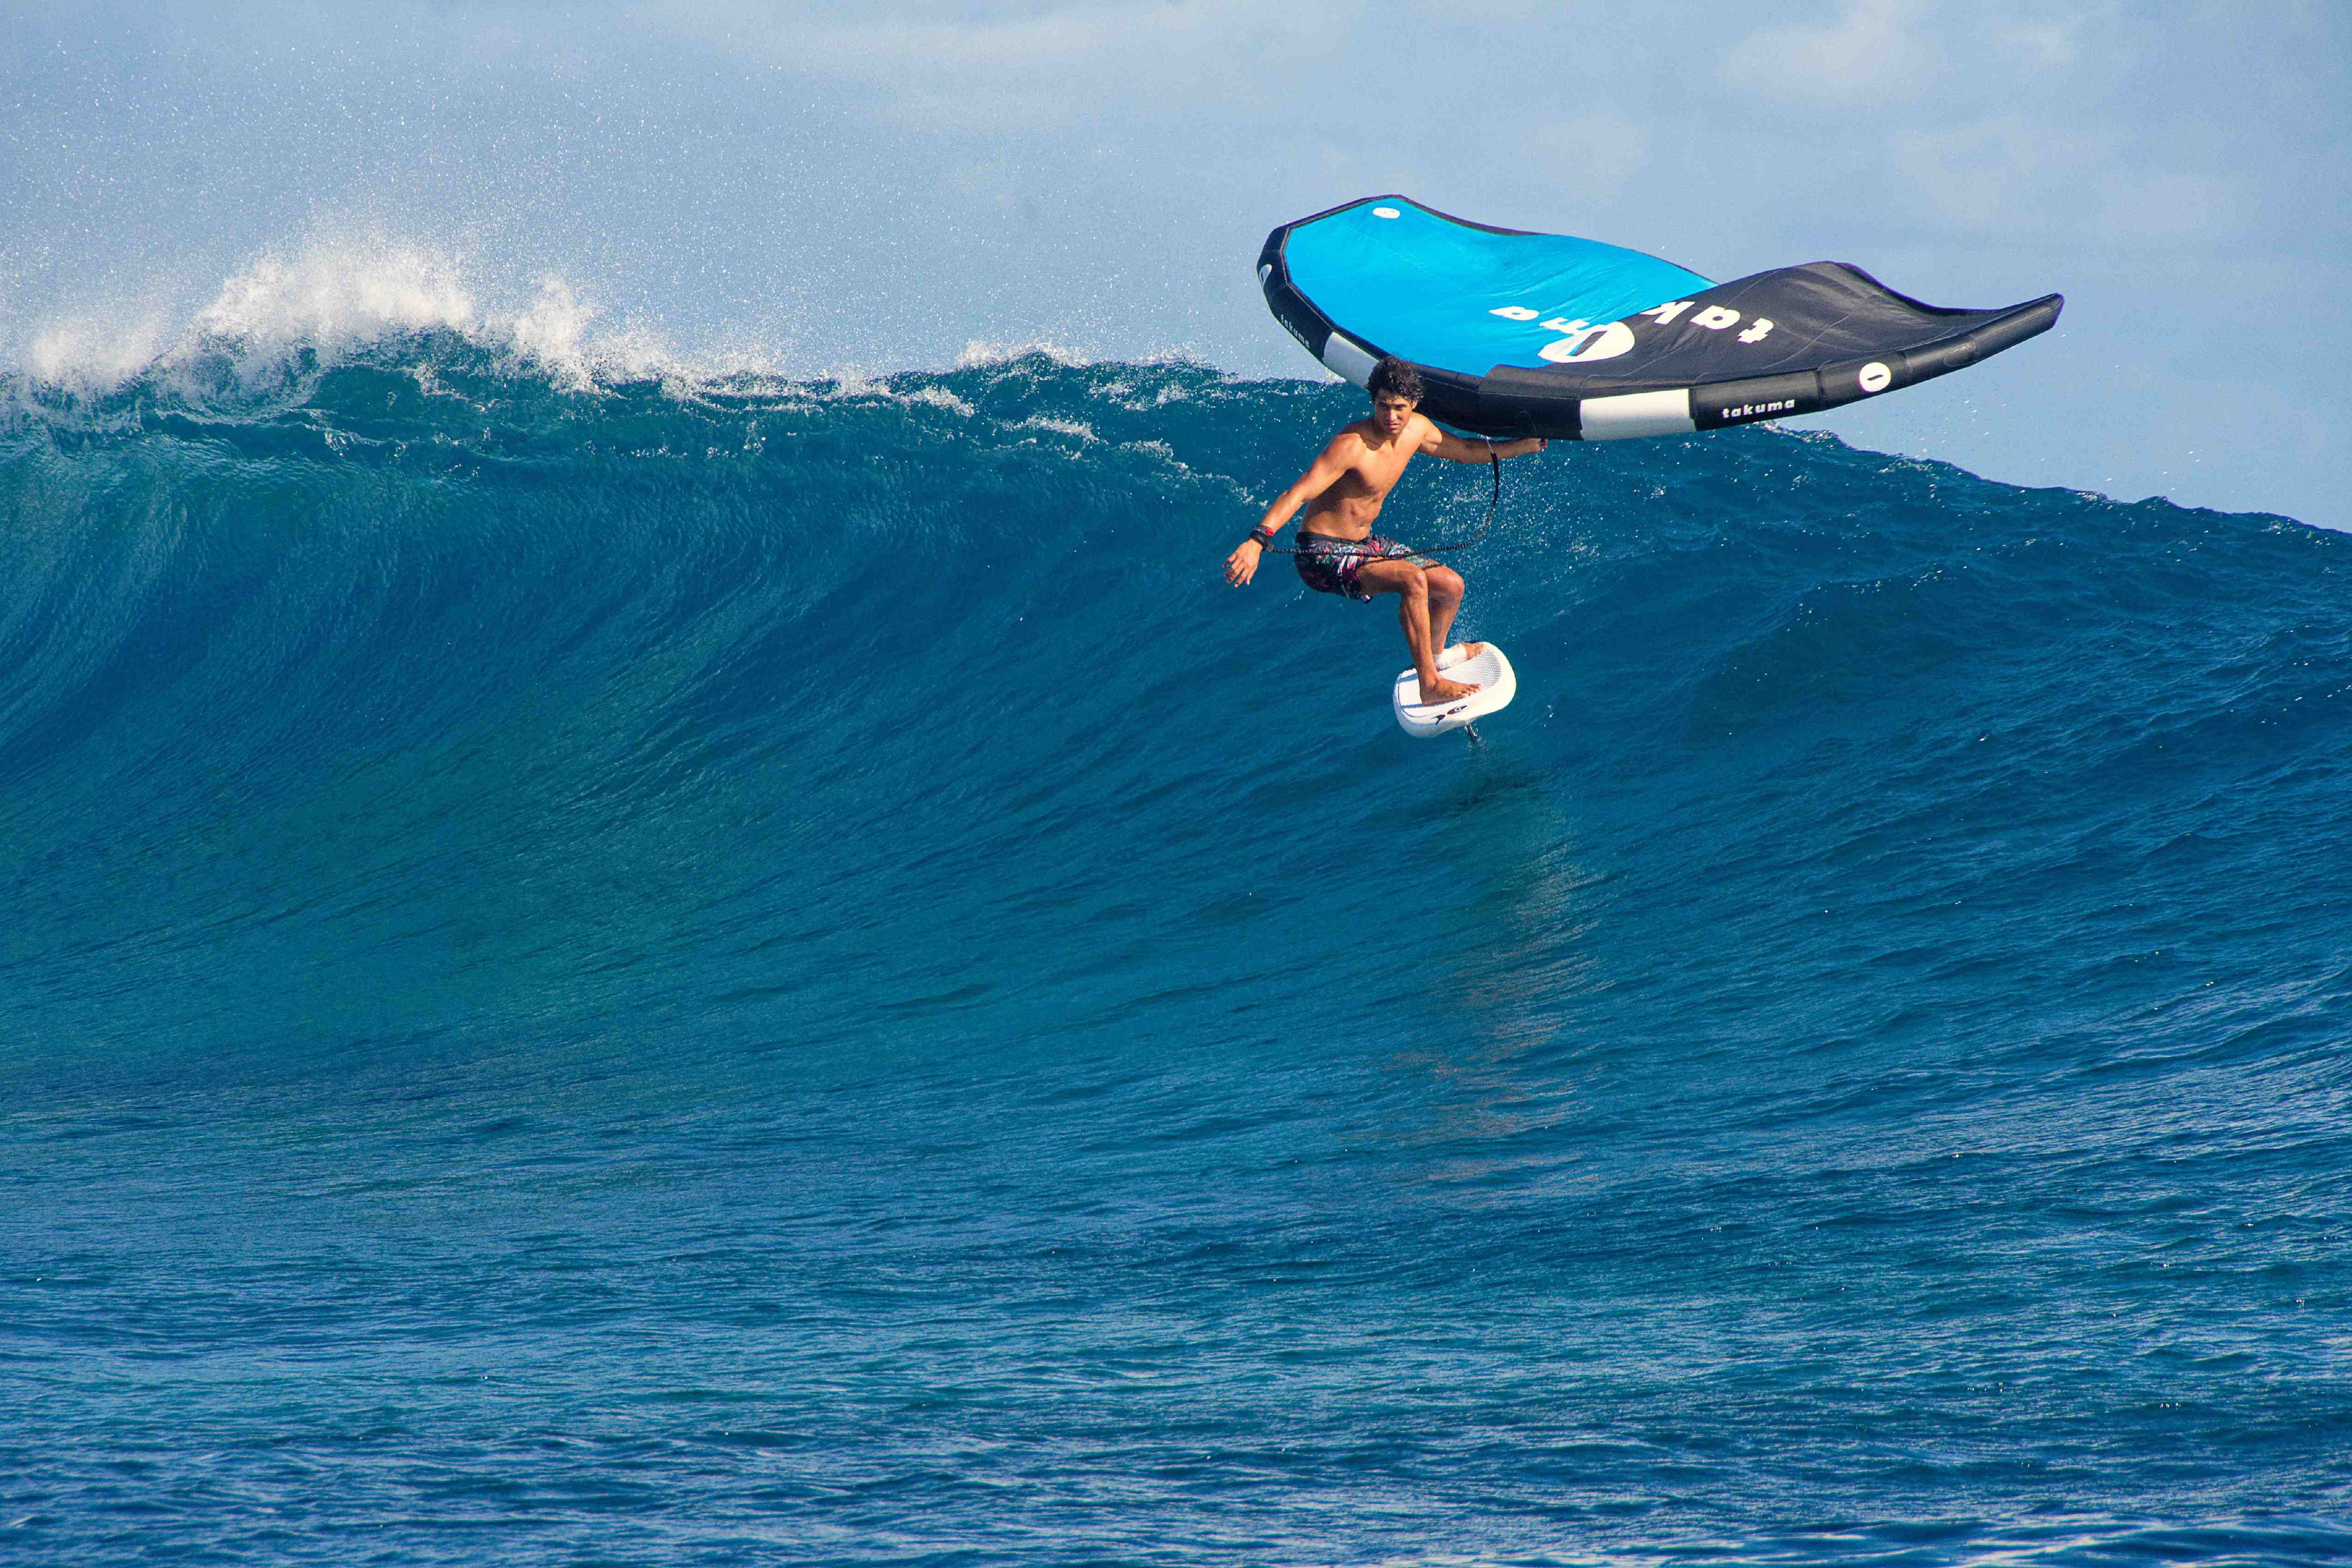 PADDLE SURF: El deporte del verano que está arrasando – Fitness Tech